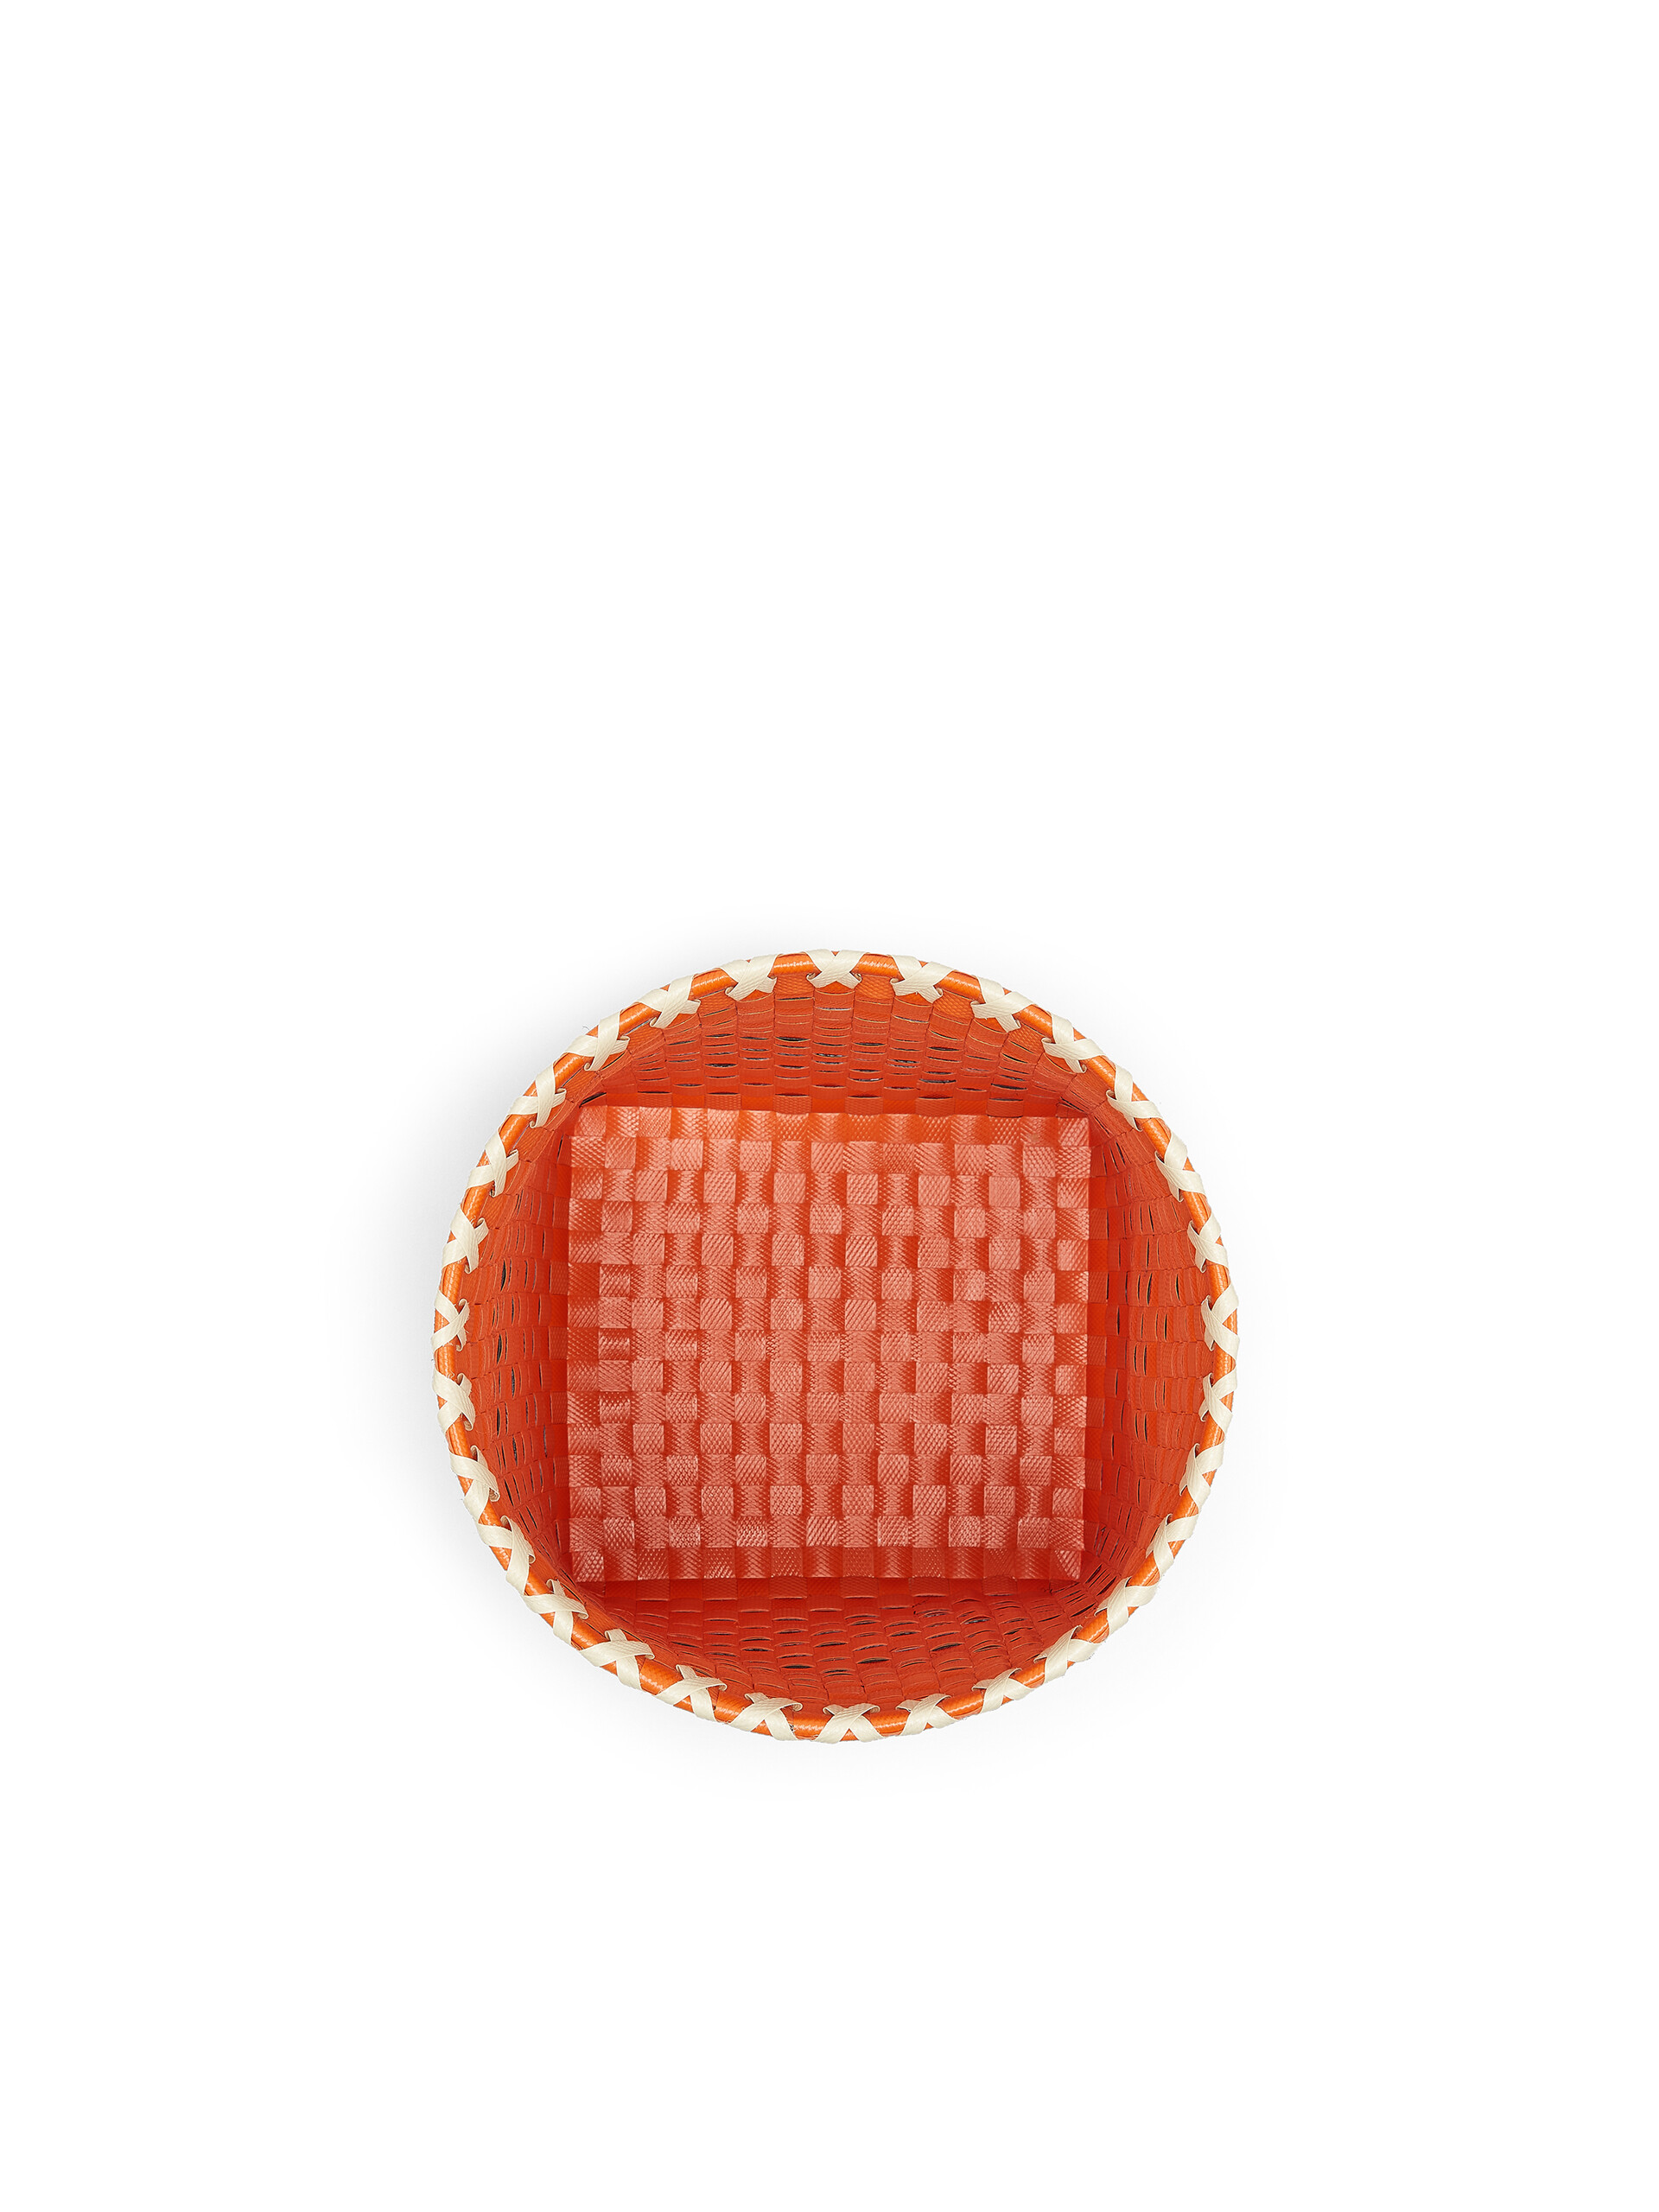 Corbeille MARNI MARKET en PVC tressé orange, noir et blanc - Accessoires - Image 4